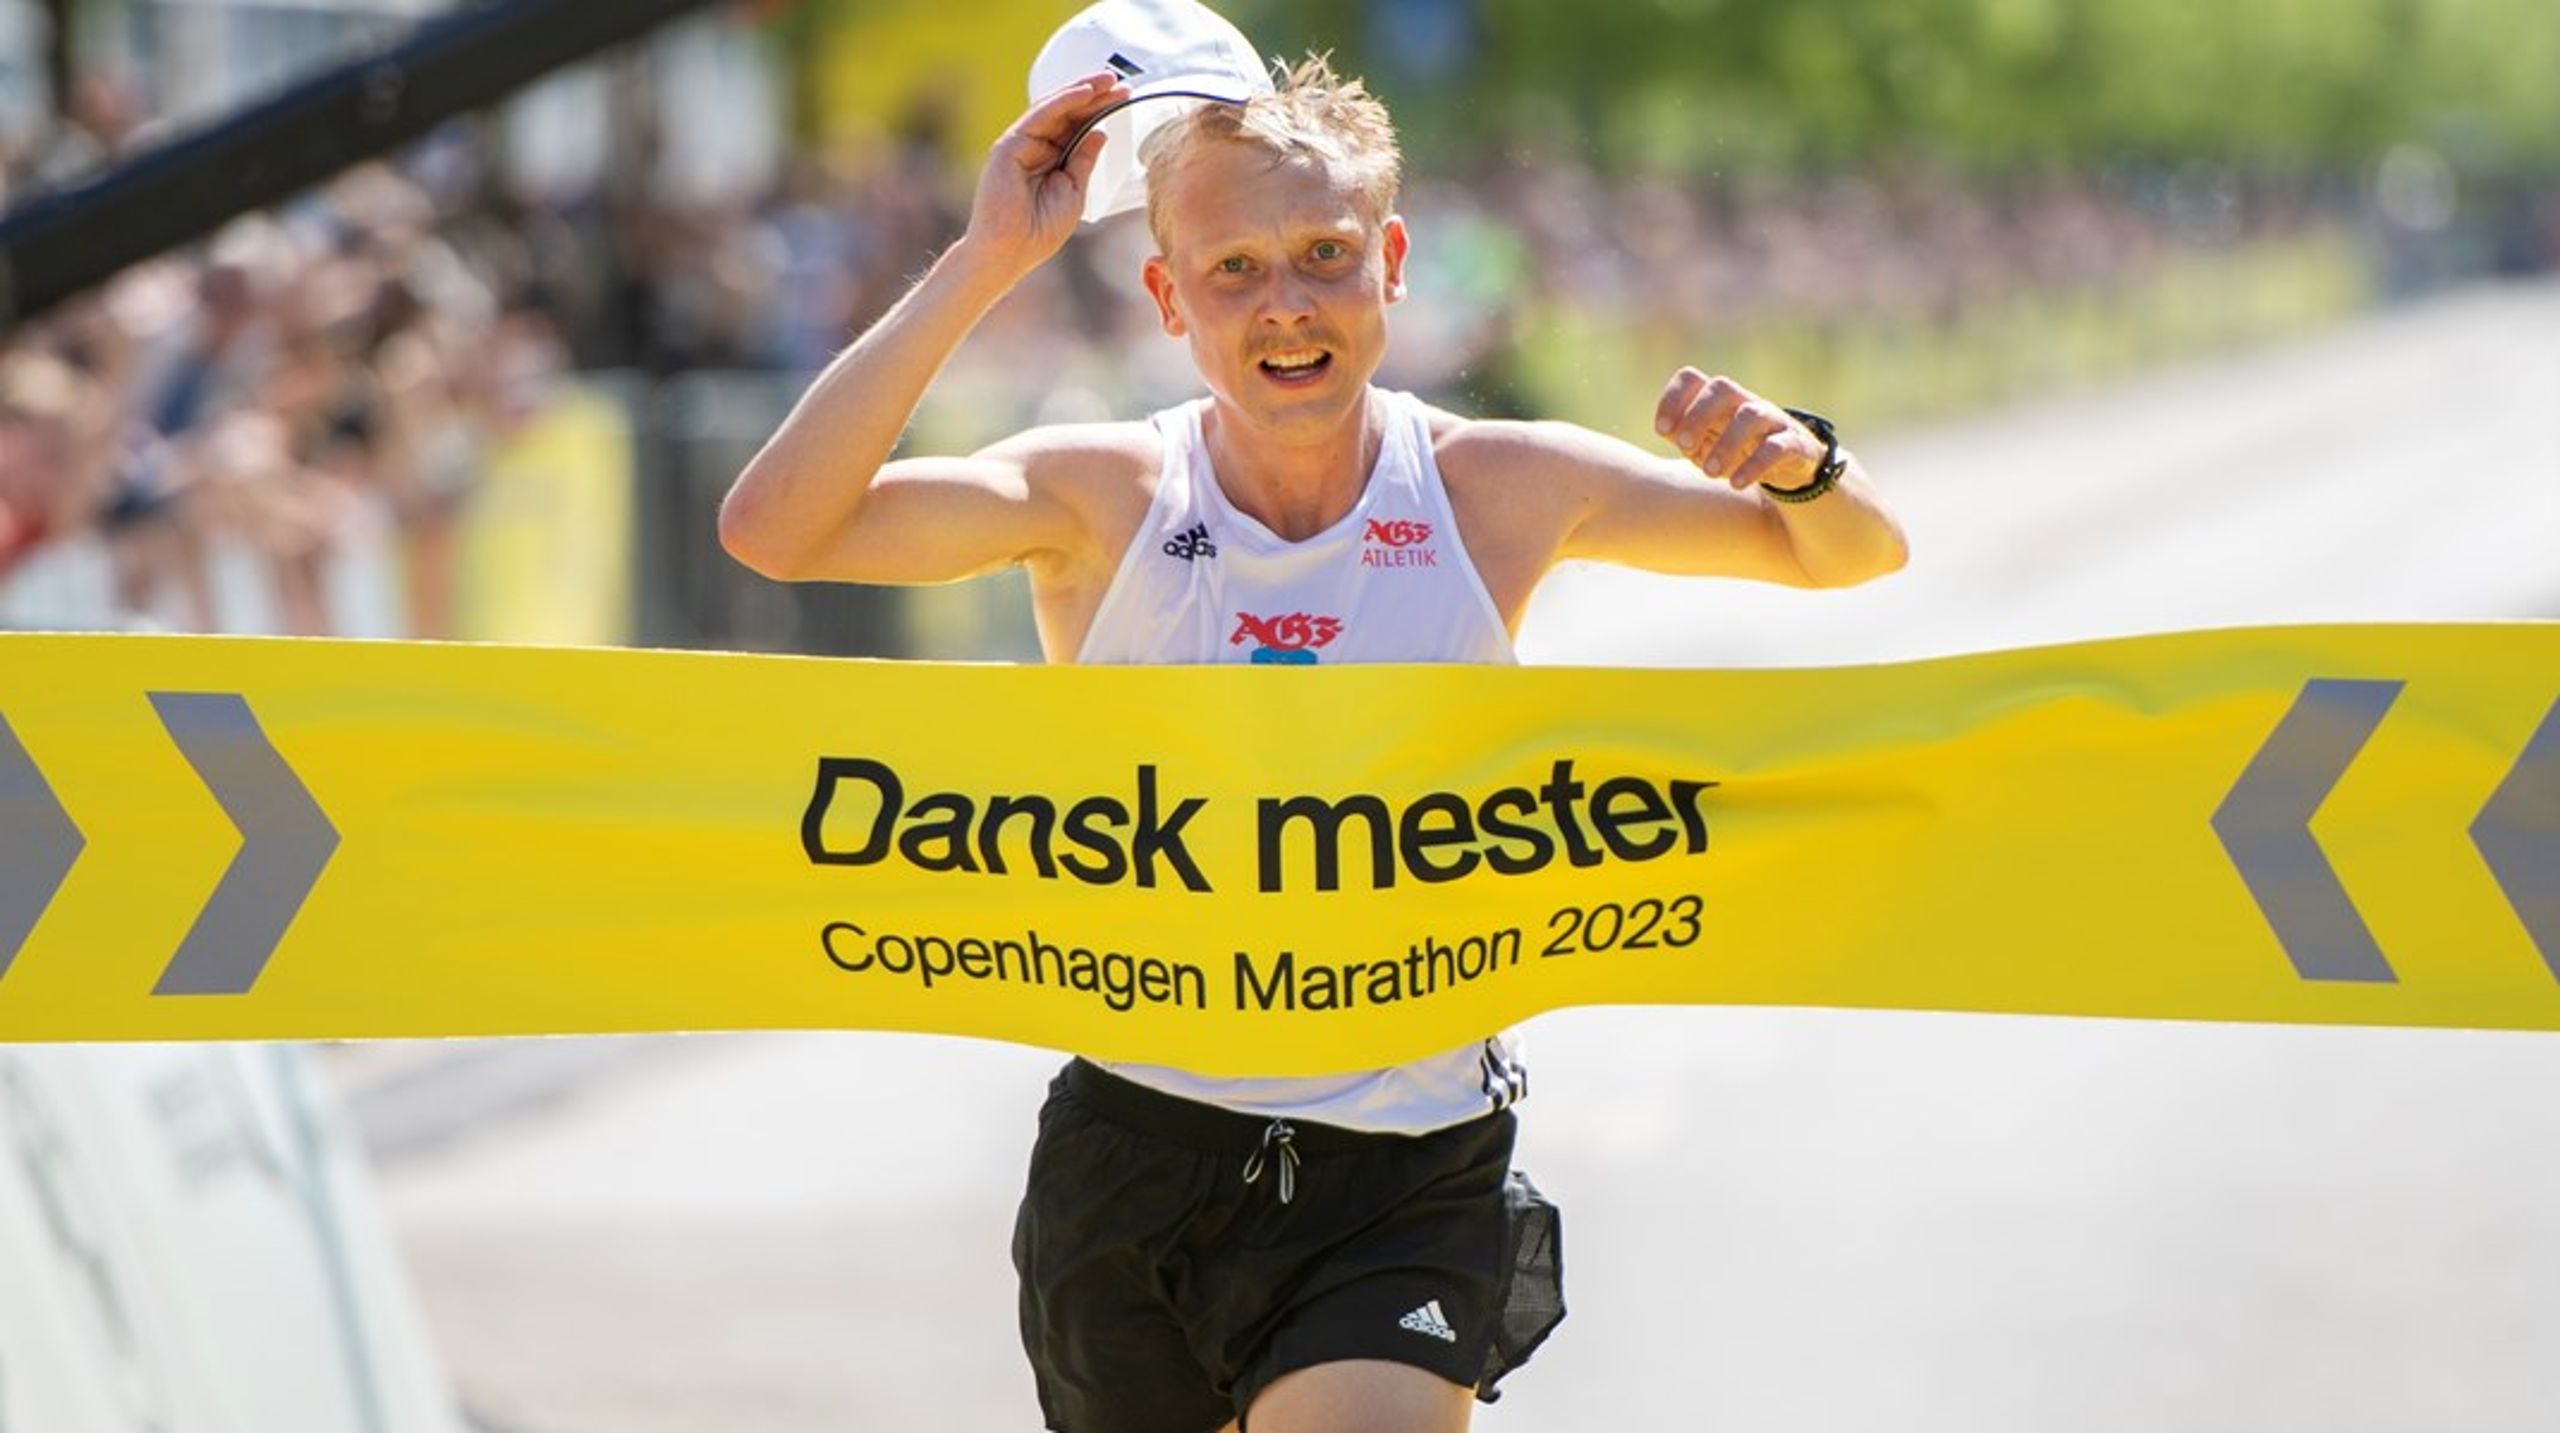 Copenhagen Marathon et af dansk atletiks helt store kommercielle flagskibe. Men forbundet har i årevis været præget af intern uro og mangler sponsorer. Nu indleder man jagten på en ny direktør.